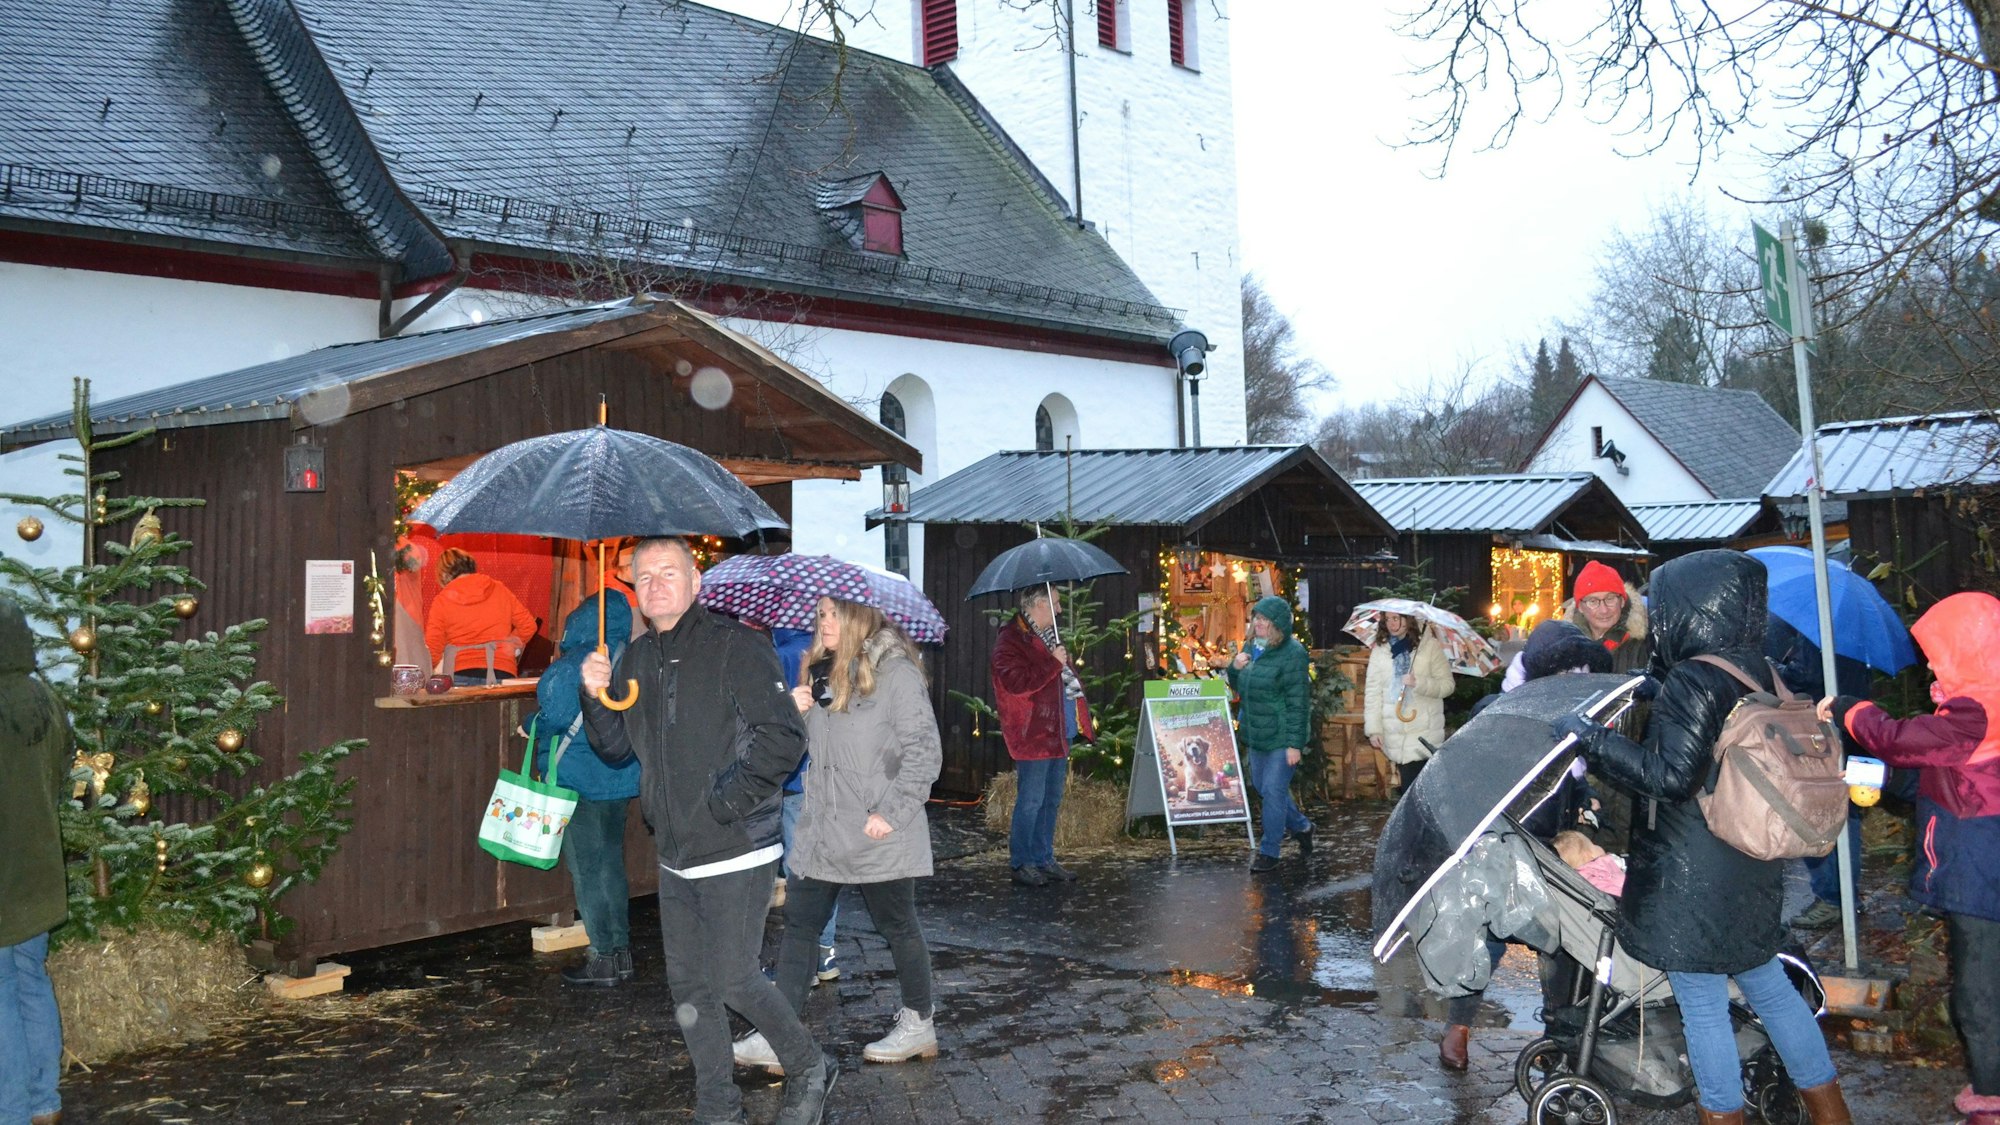 Beleuchtete Holzhütten vor einer Dorfkirche, Besucher mmit Regenschirm